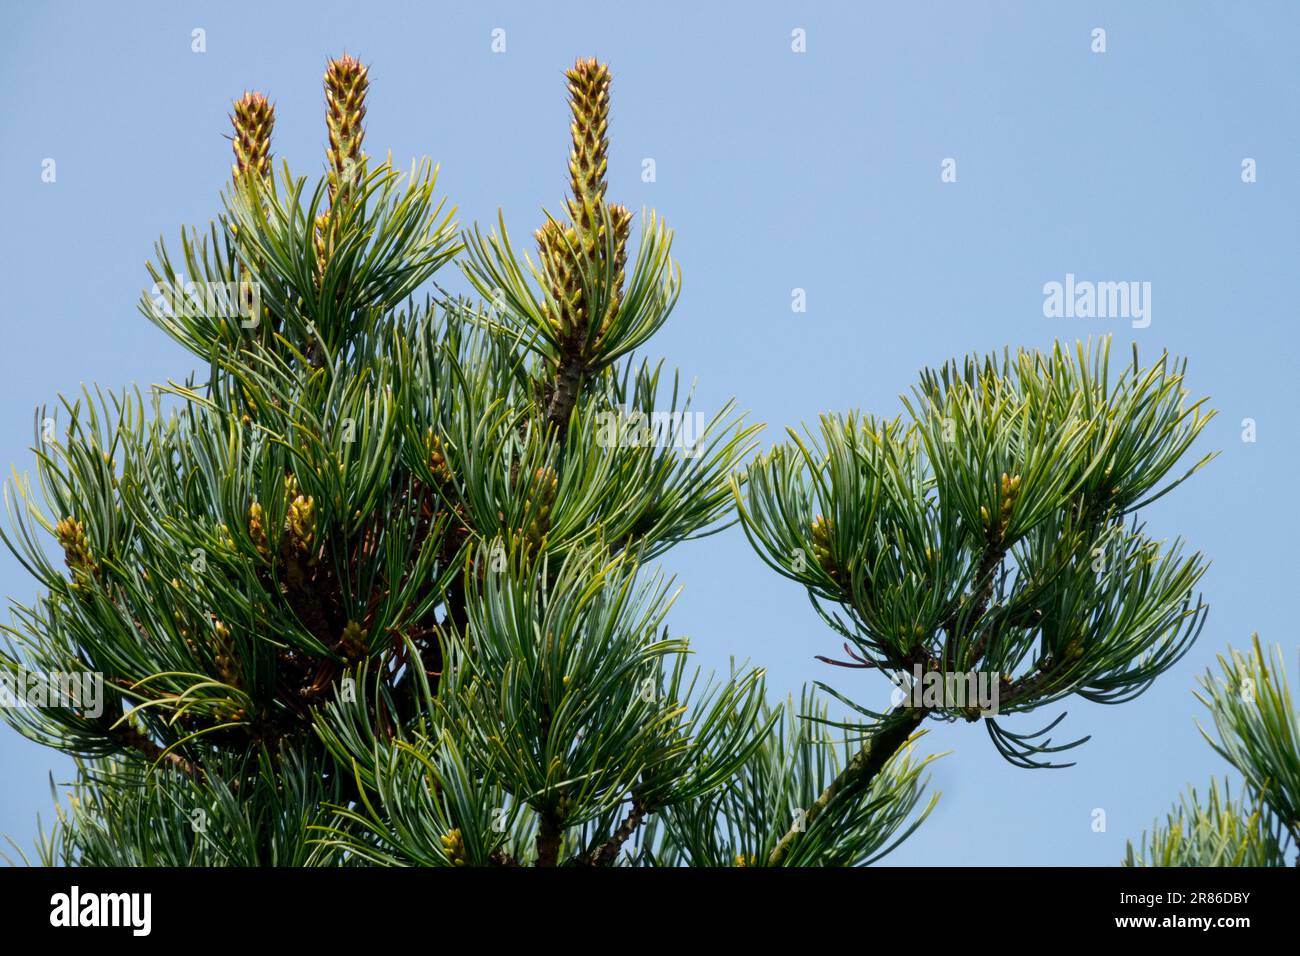 Japanese White Pine, Tree, Pinus parviflora branch Stock Photo